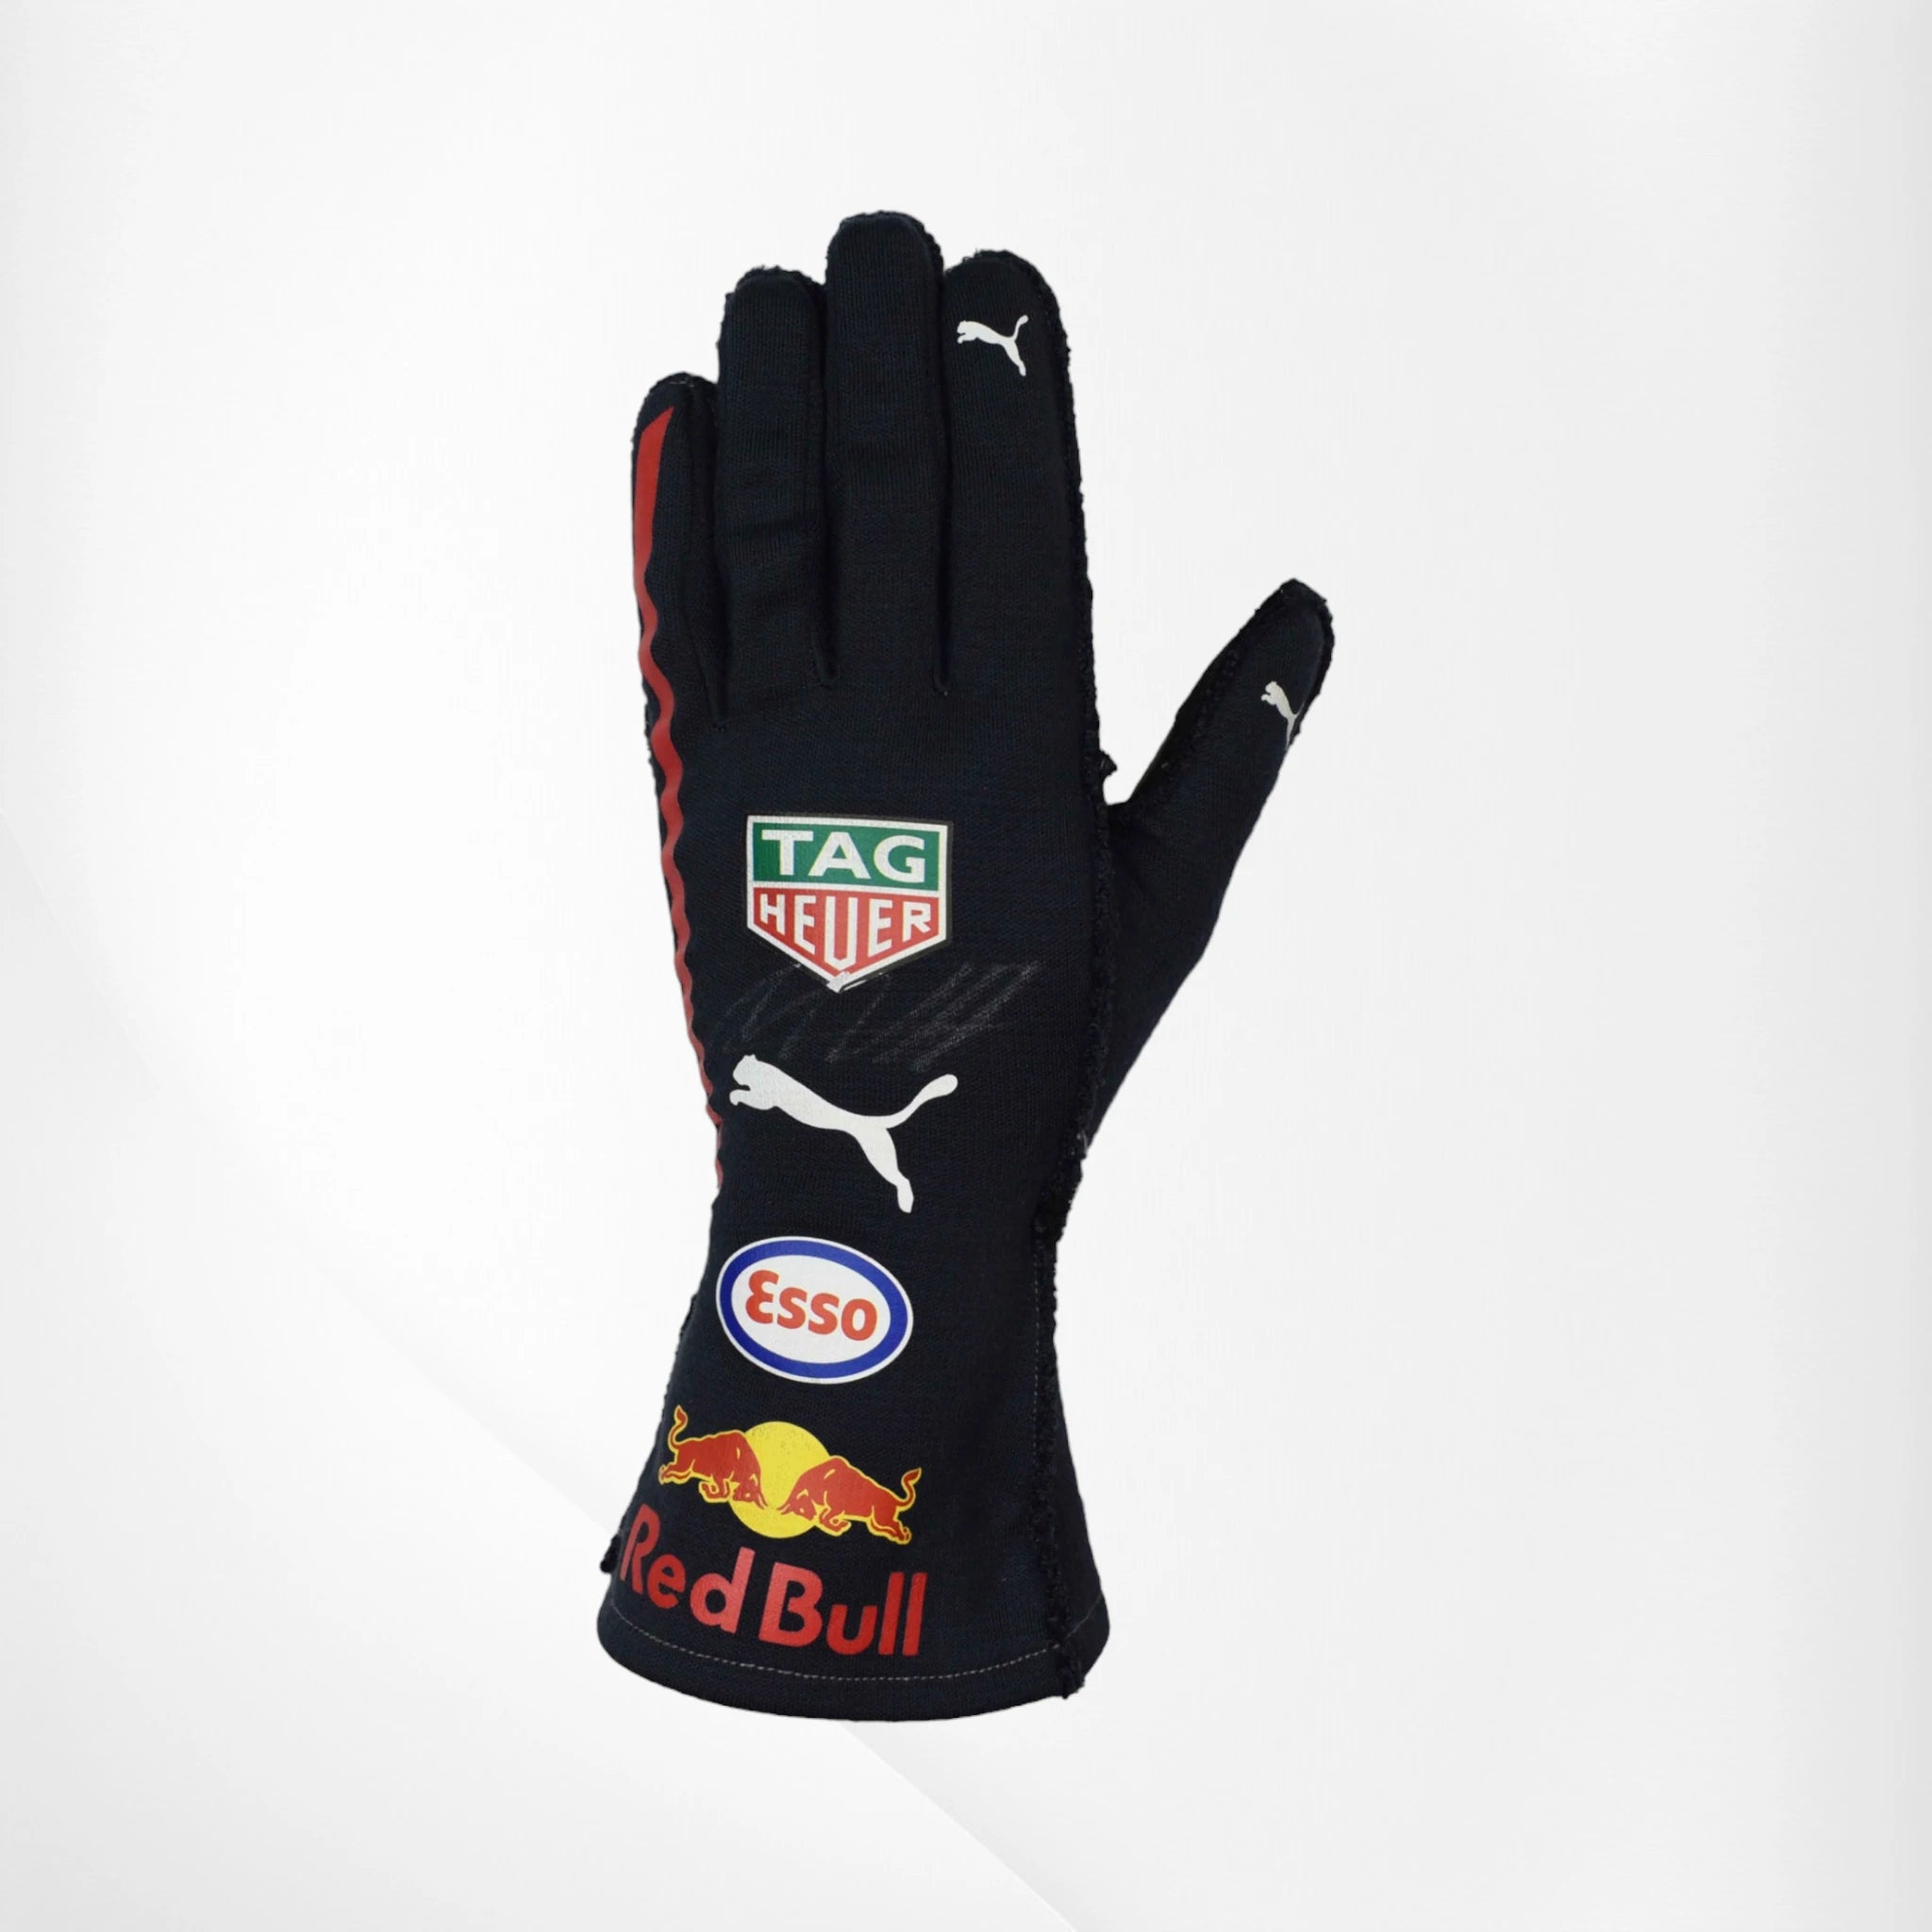 2017 Red Bull Max Verstappen F1 Race Gloves